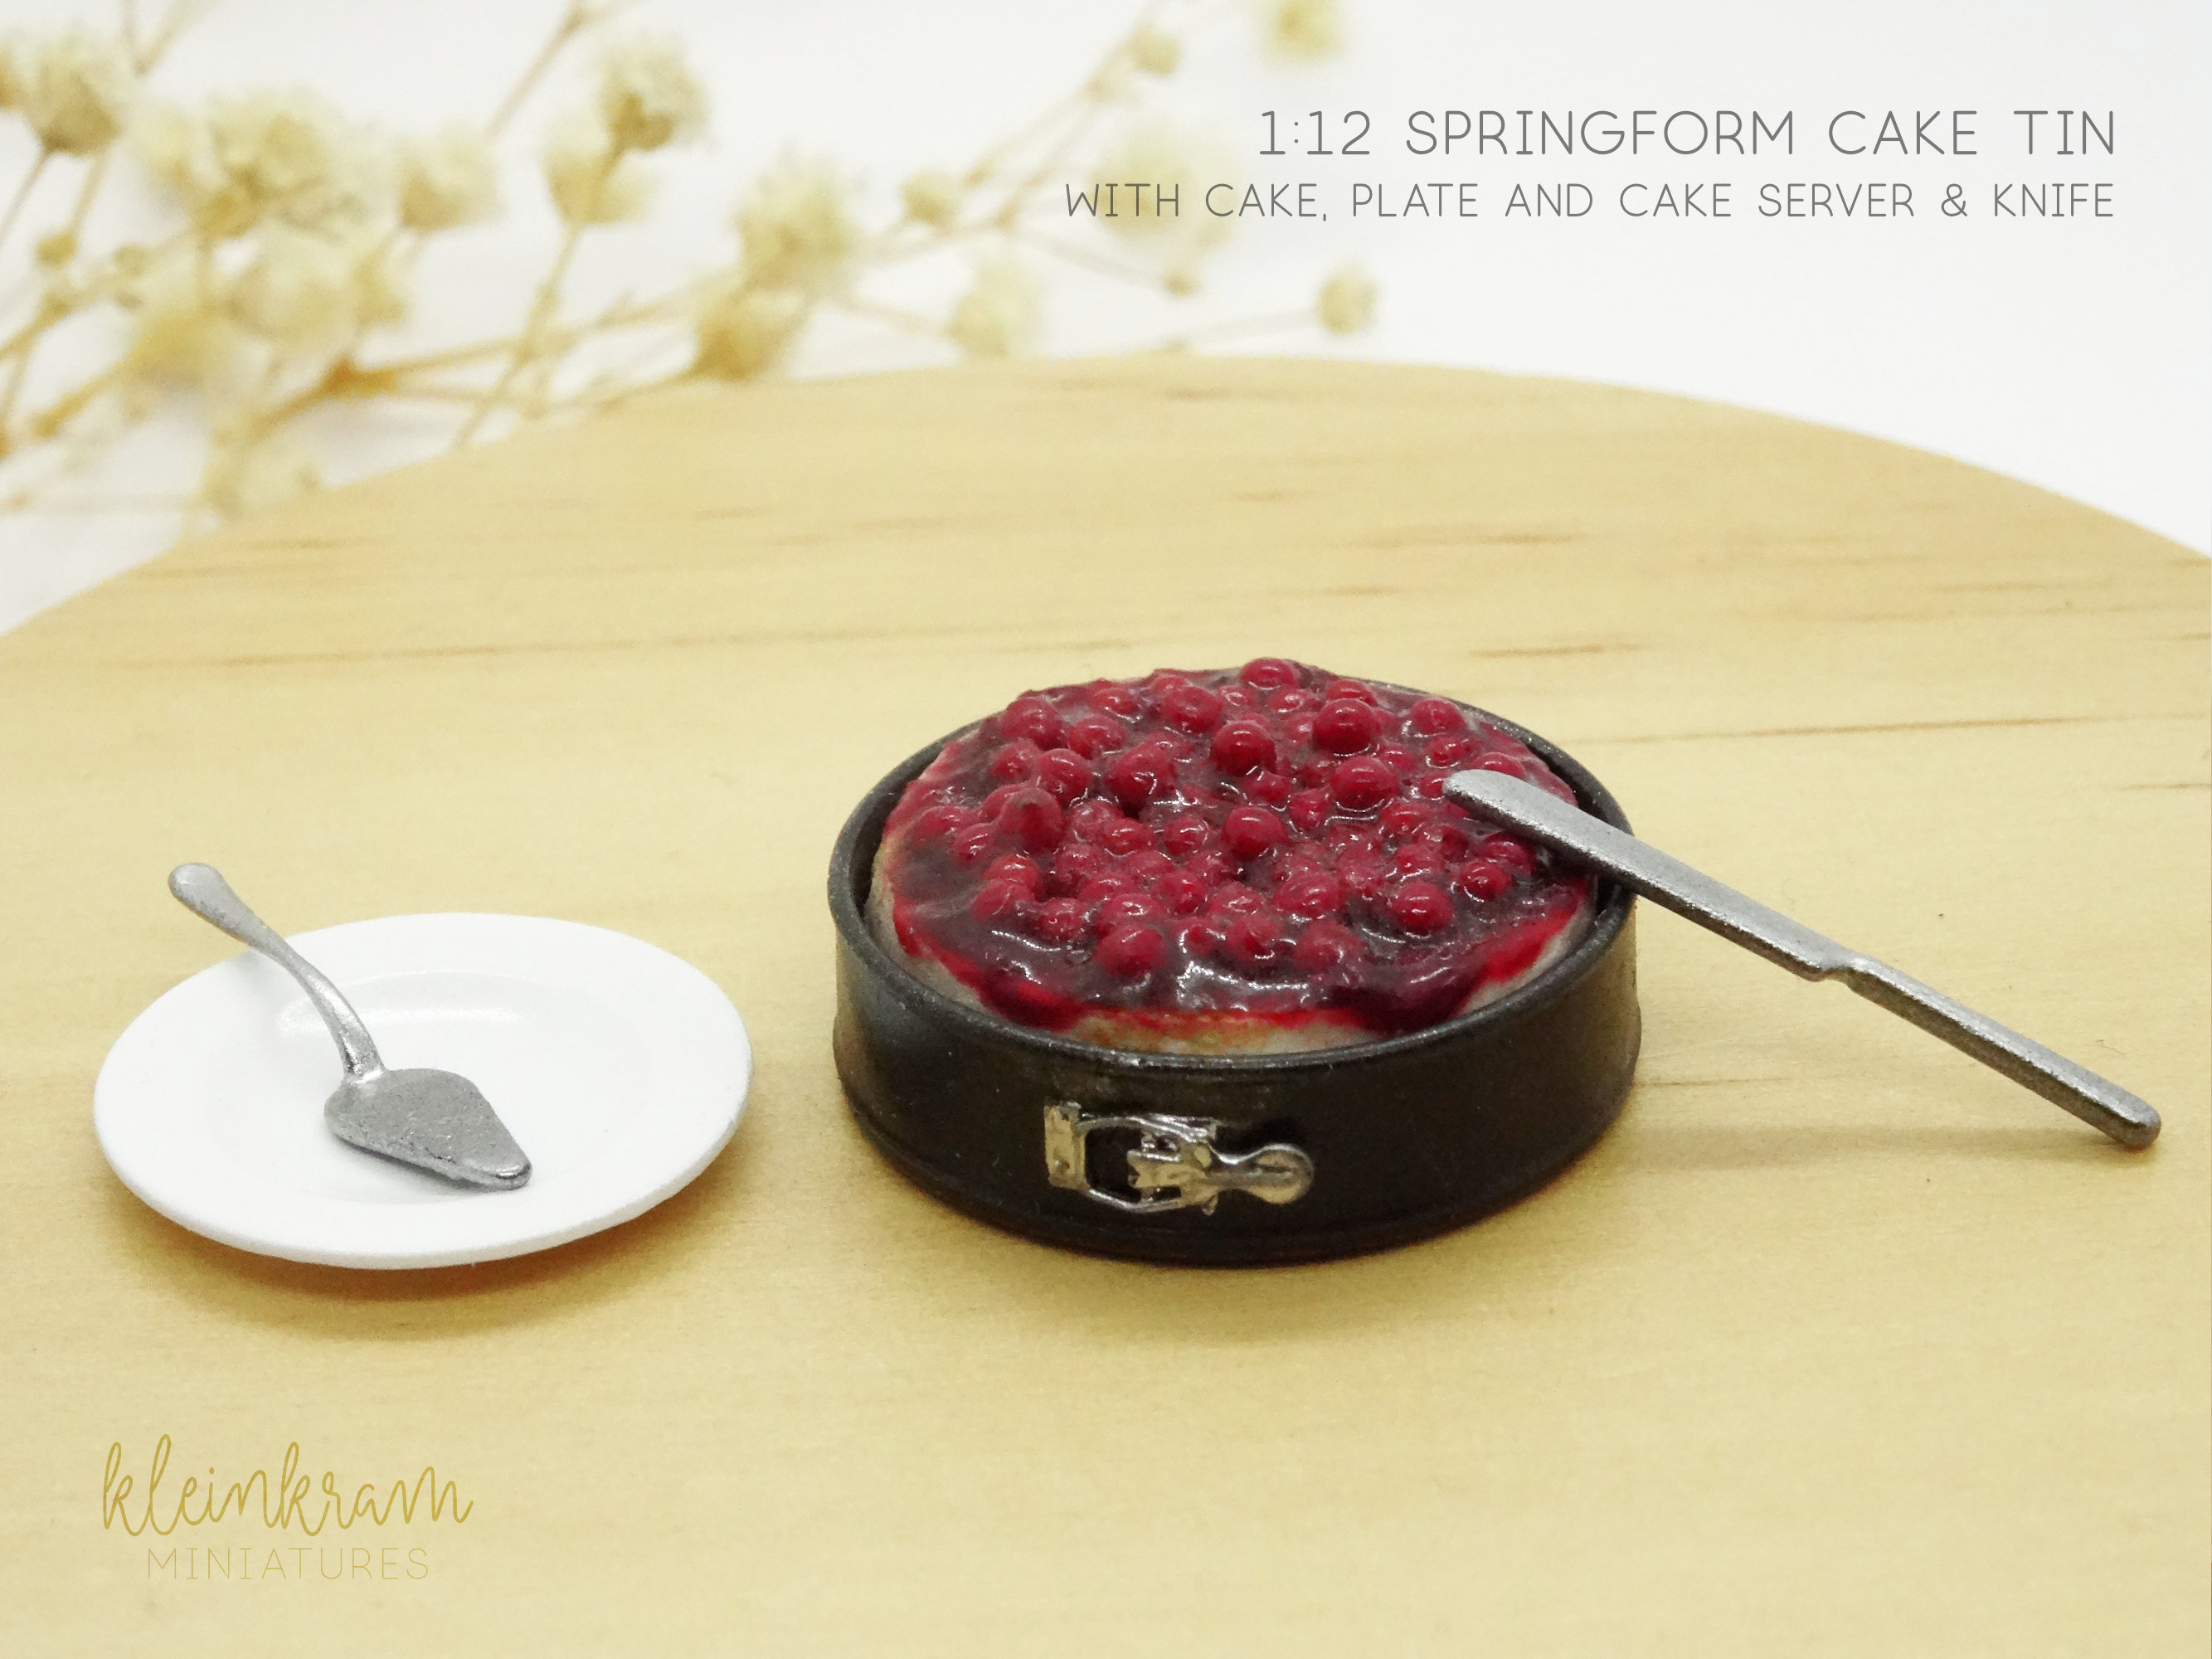 Springform Cake Tin - 1/12 Miniature